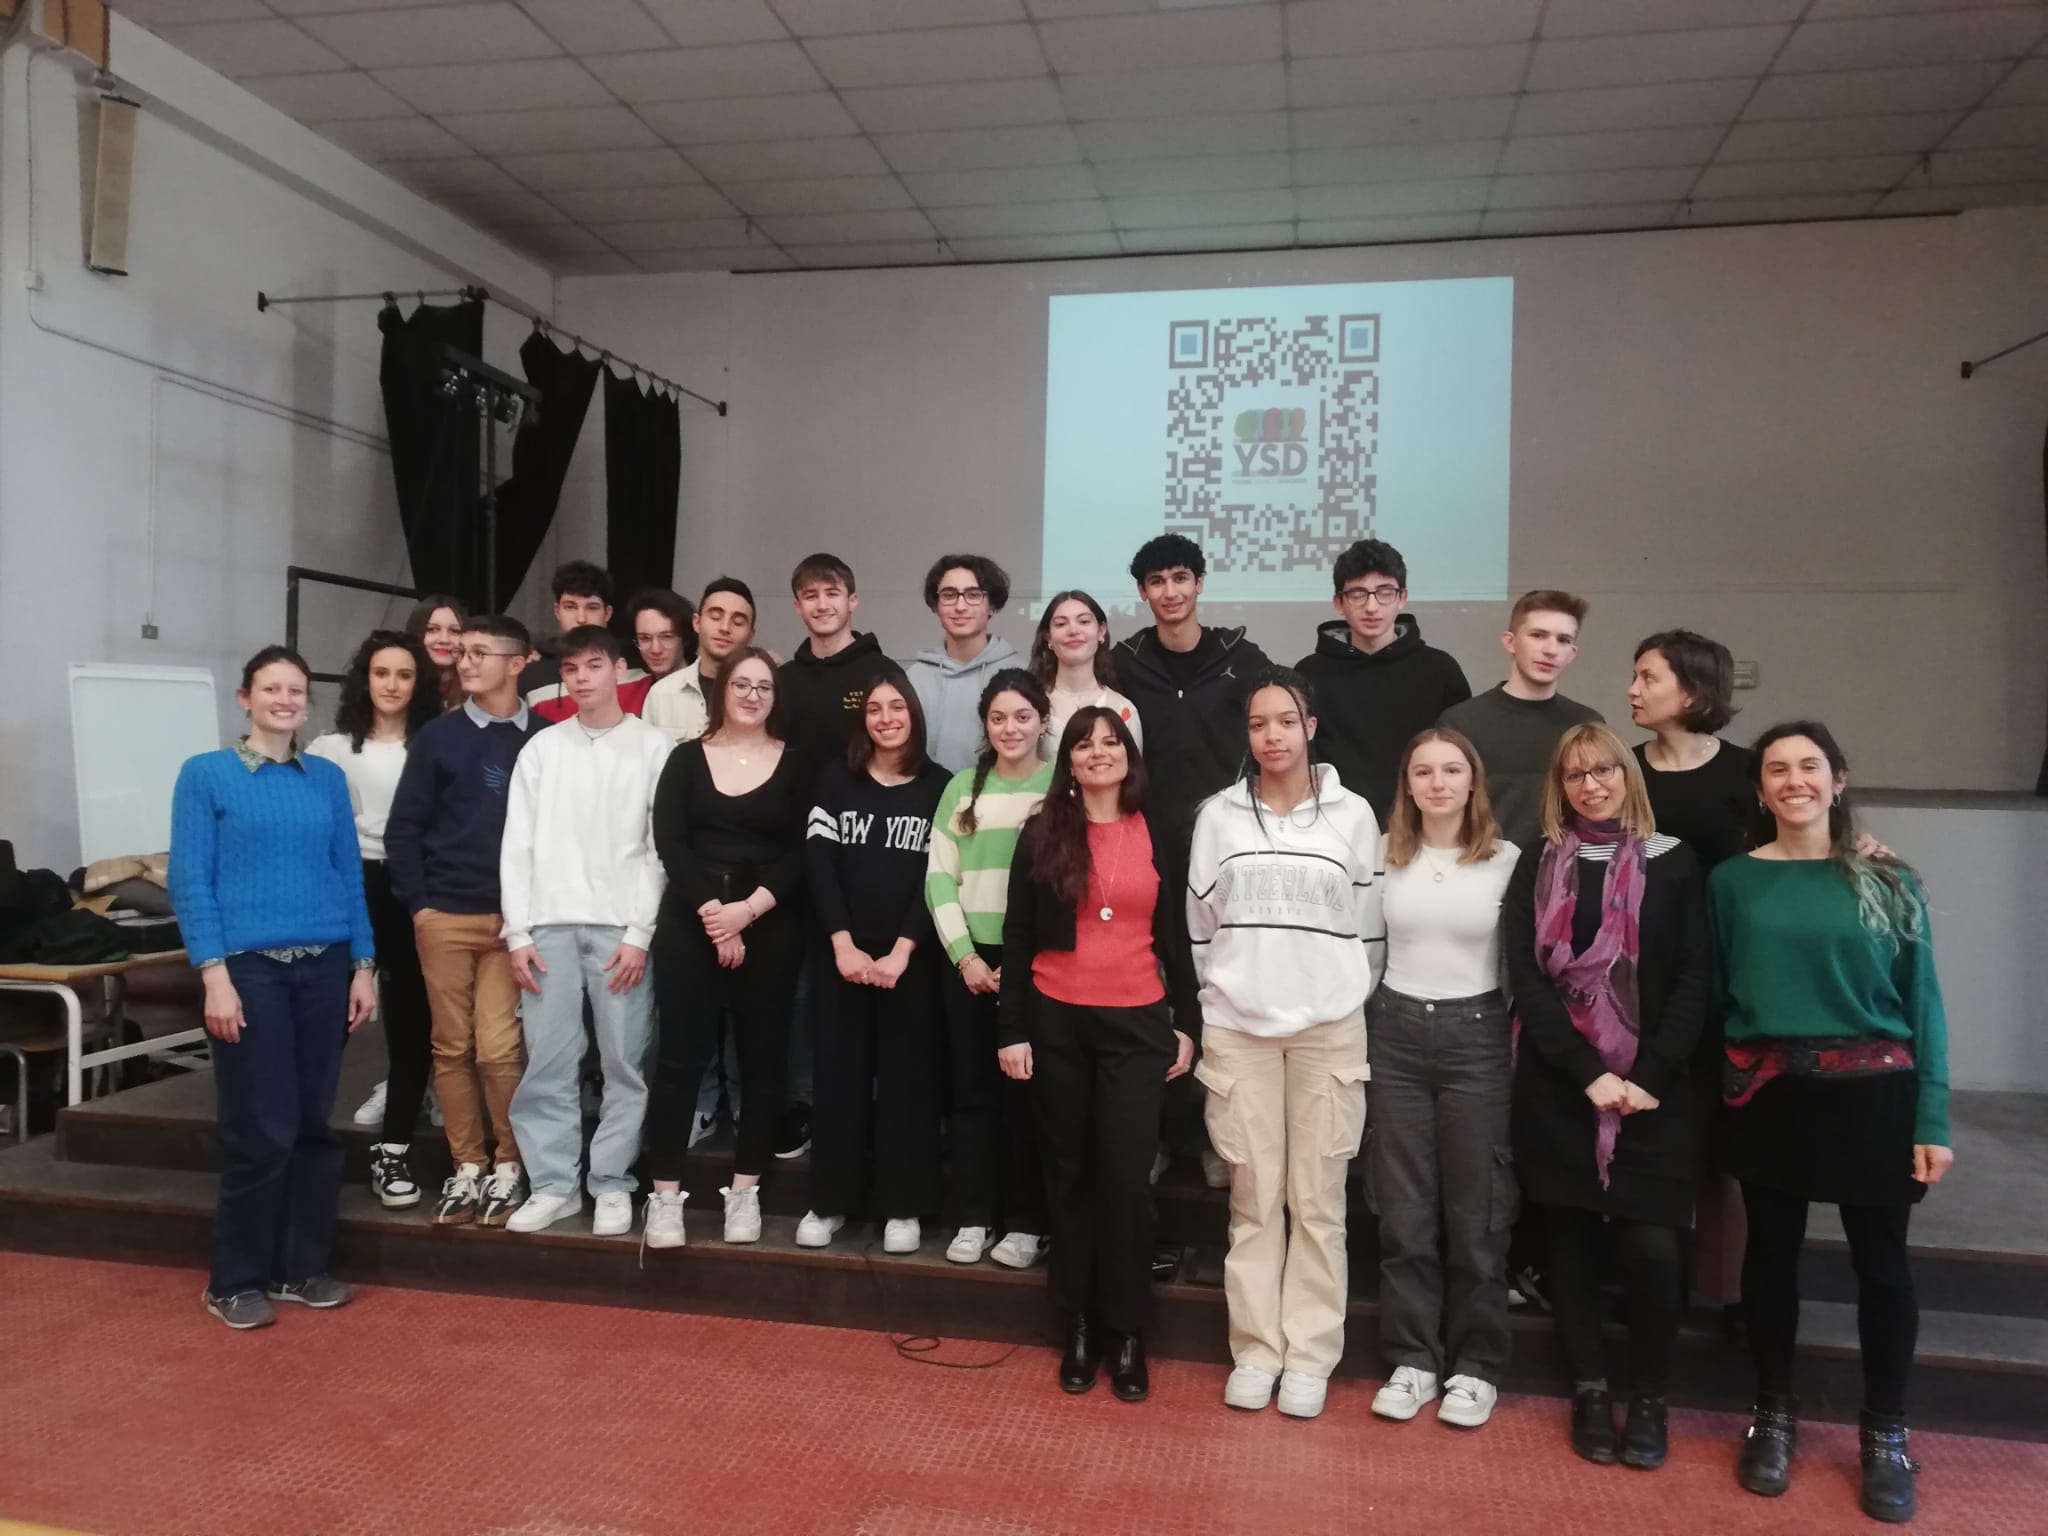 YOUNG SERVICE DESIGNERS: i giovani europei al centro per ripensare le città e i servizi